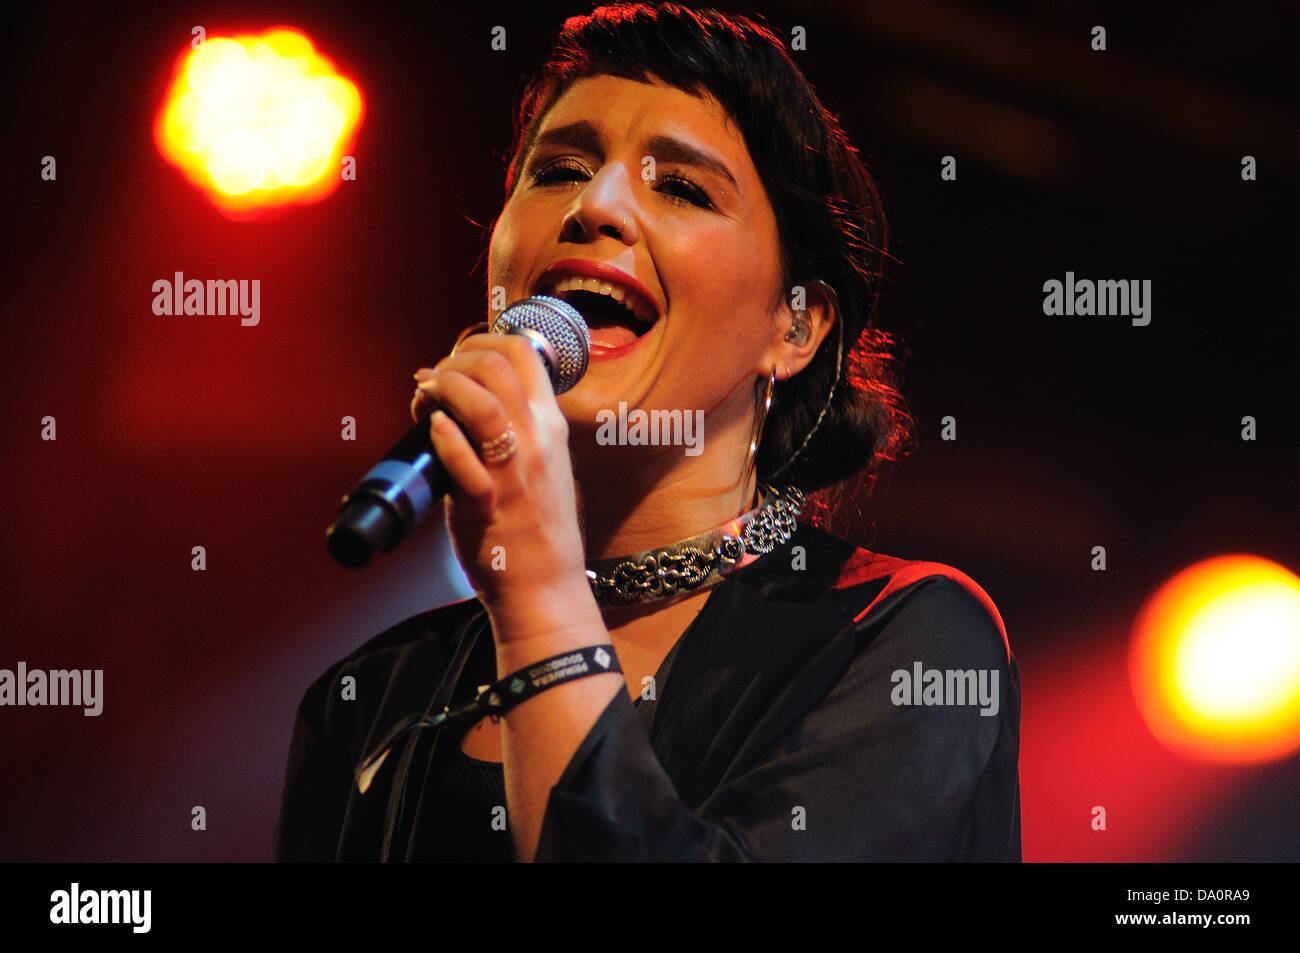 BARCELONA - 23 Mai: Jessie Ware, eine britische Singer-Songwriterin, führt bei Heineken Primavera Sound Festival 2013. Stockfoto